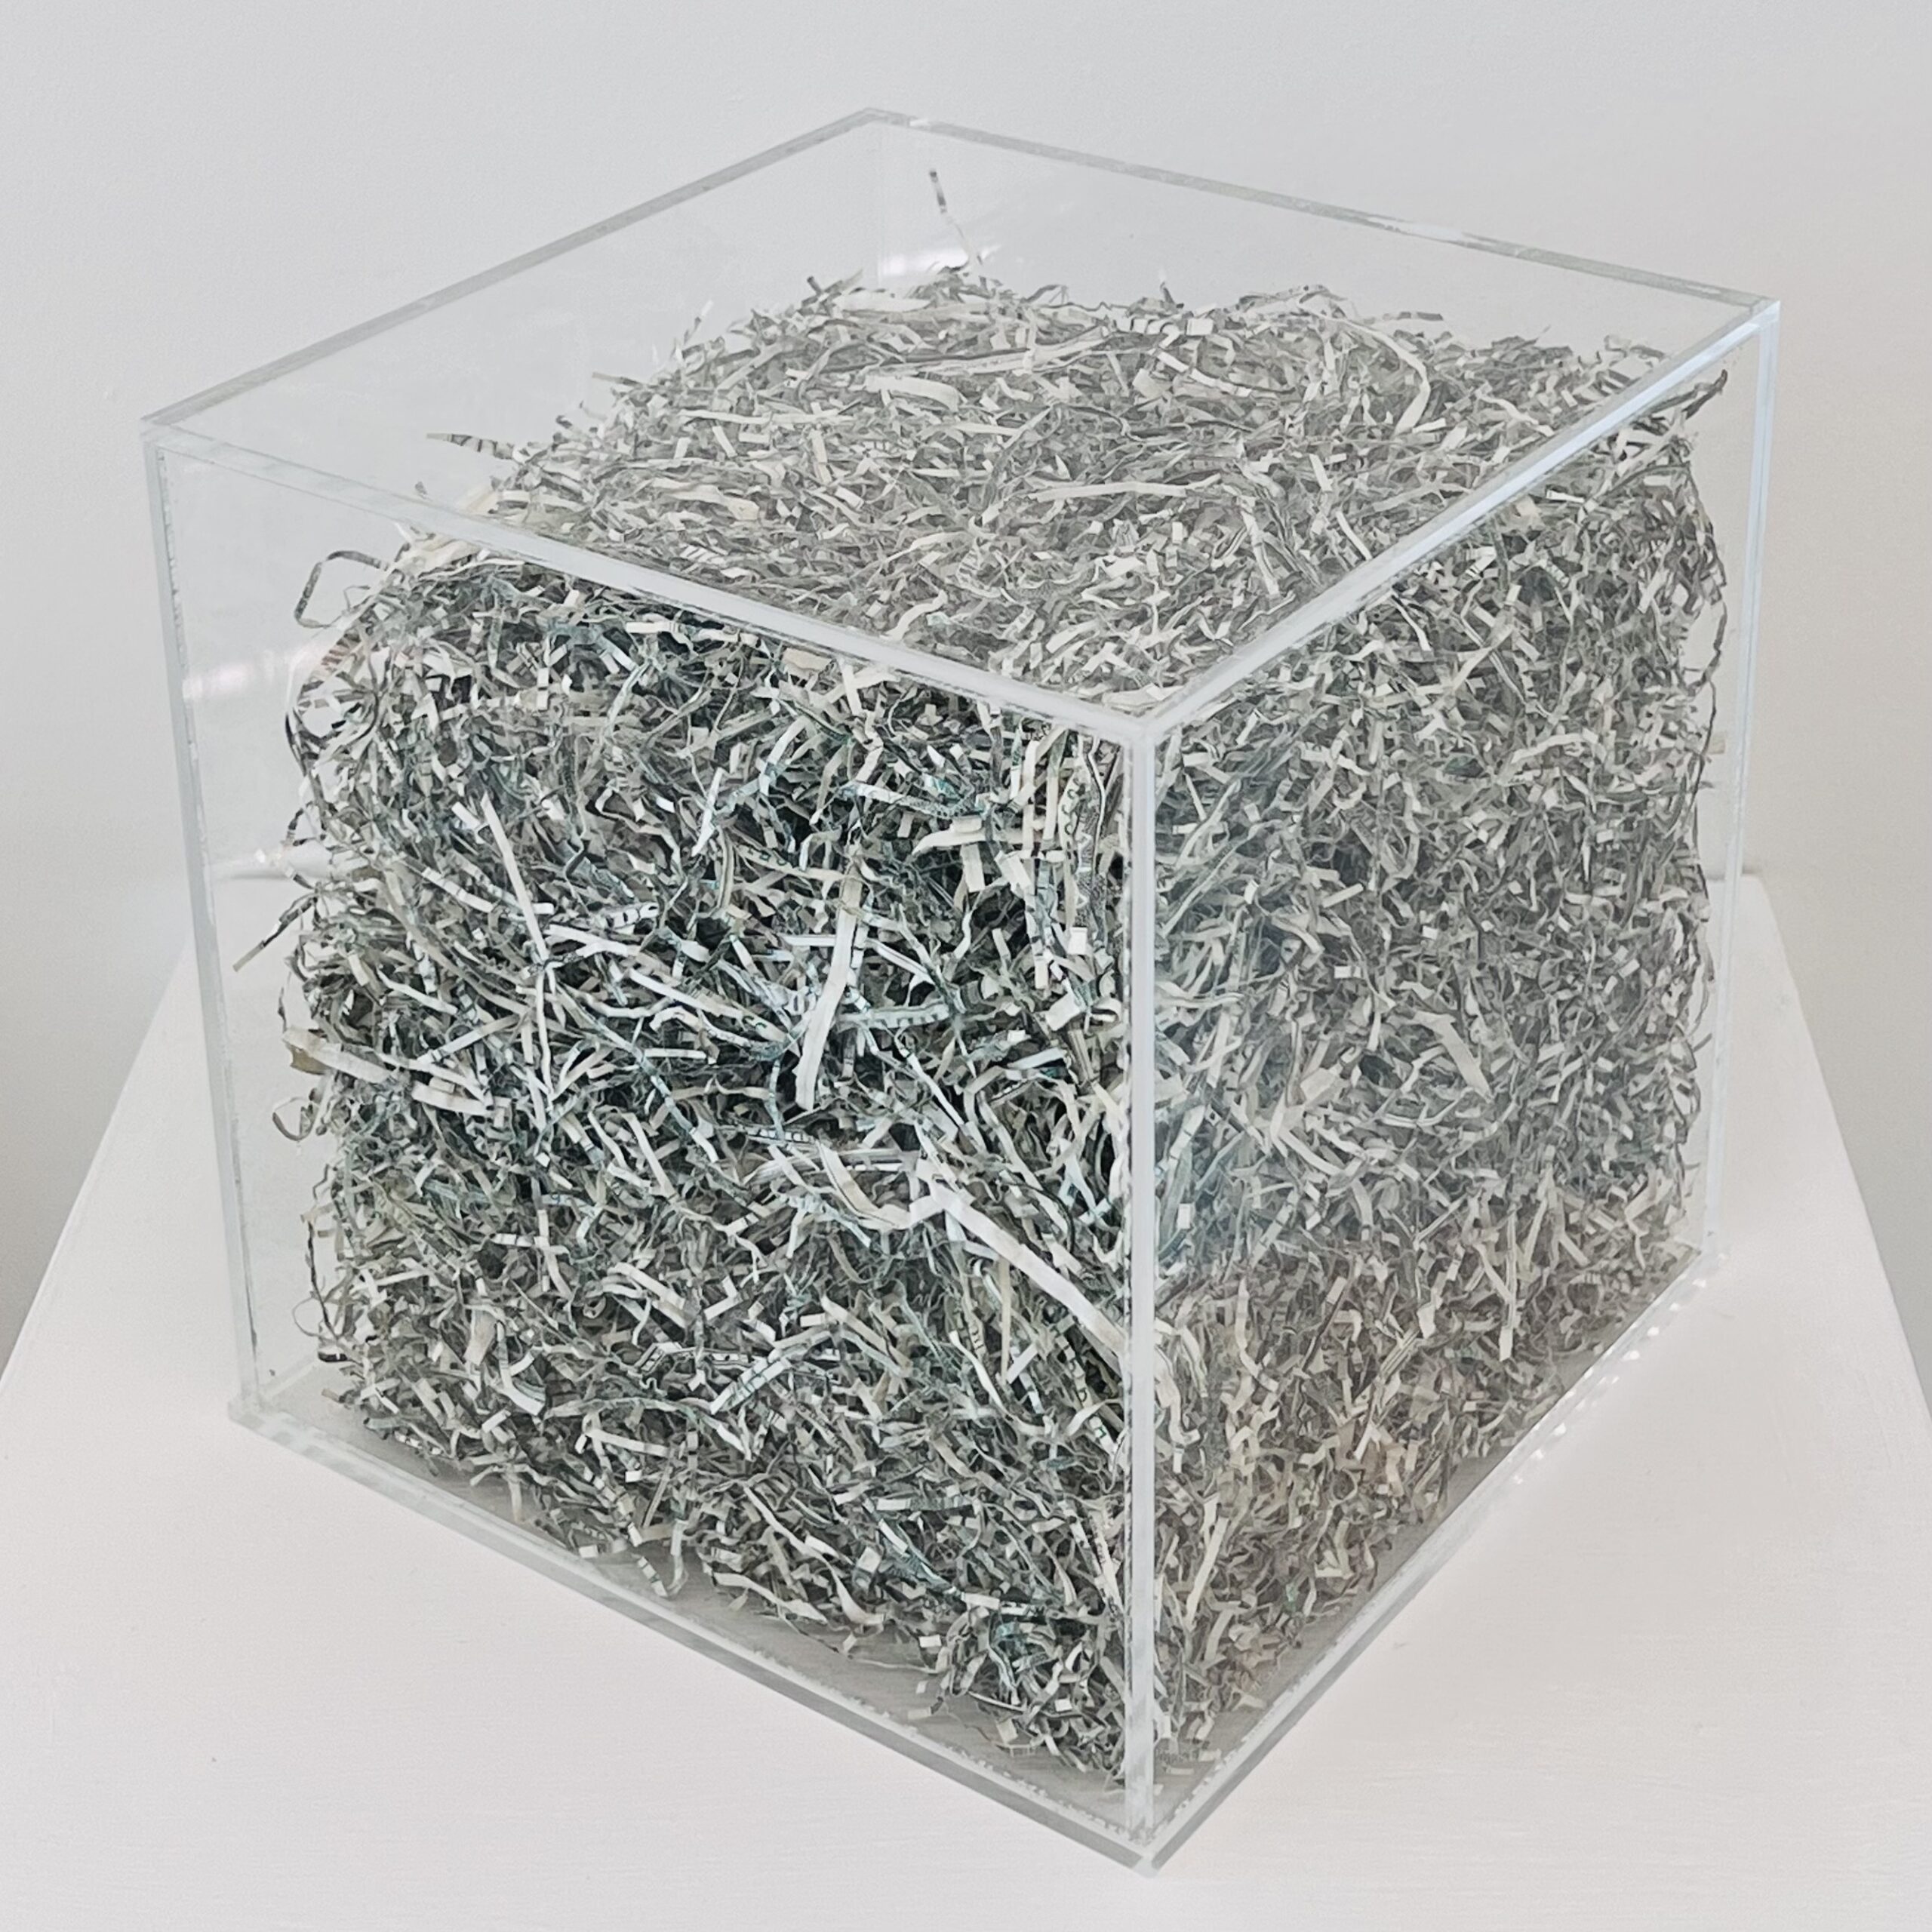 Jan Henderikse, Shredded value, cube